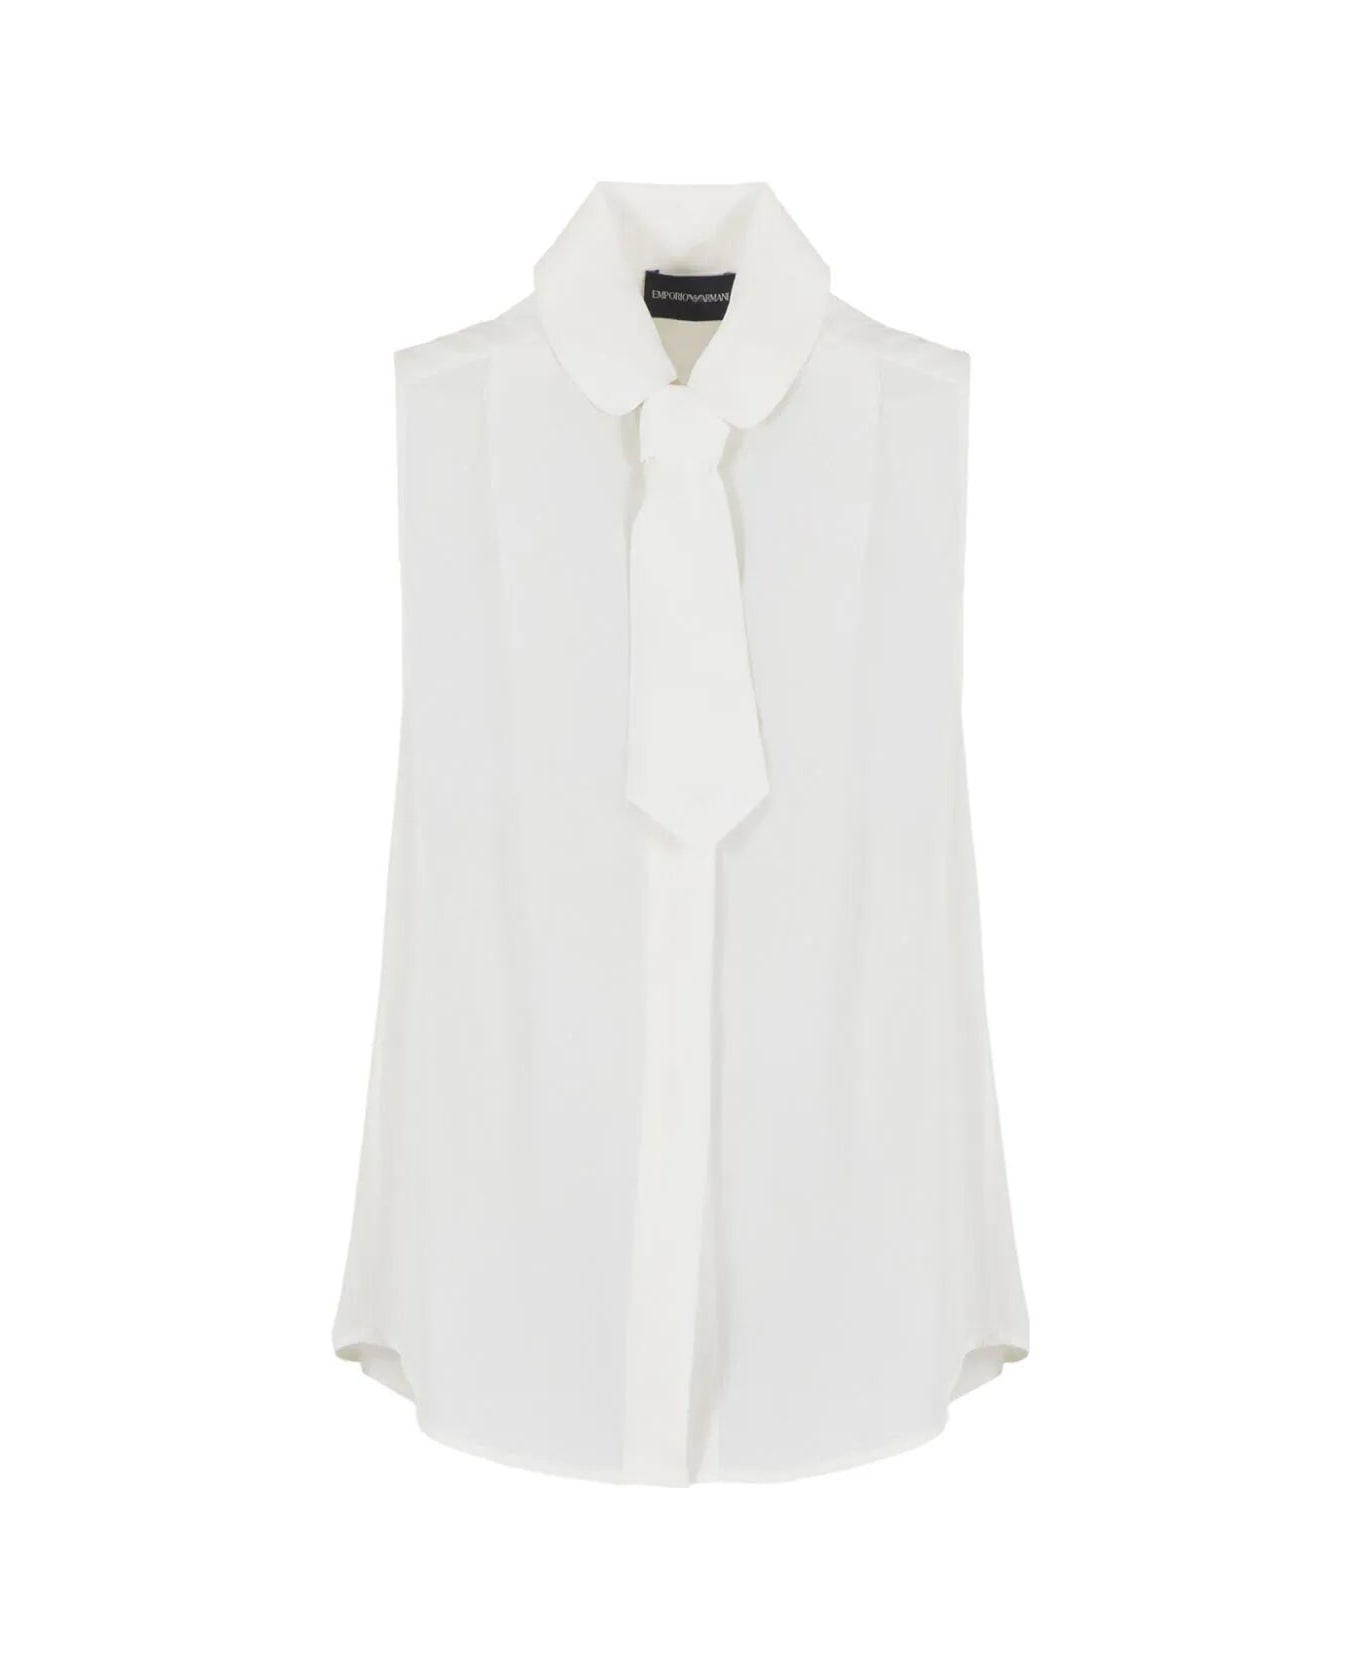 Emporio Armani Sleeveless Shirt - Warm White